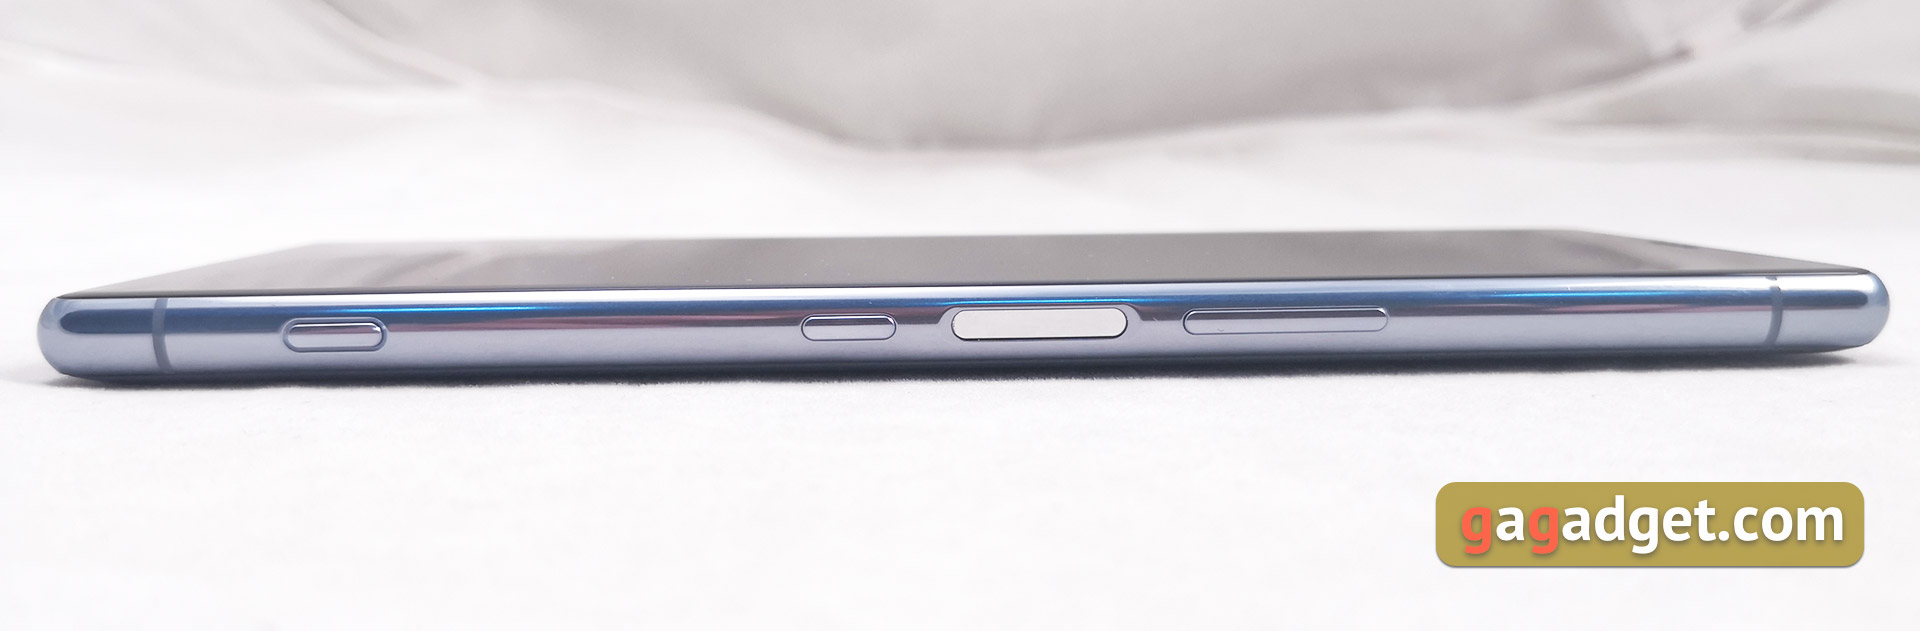 Przegląd Sony Xperia 1, "wysoki" flagowy z 4K HDR wyświetlaczem OLED-10